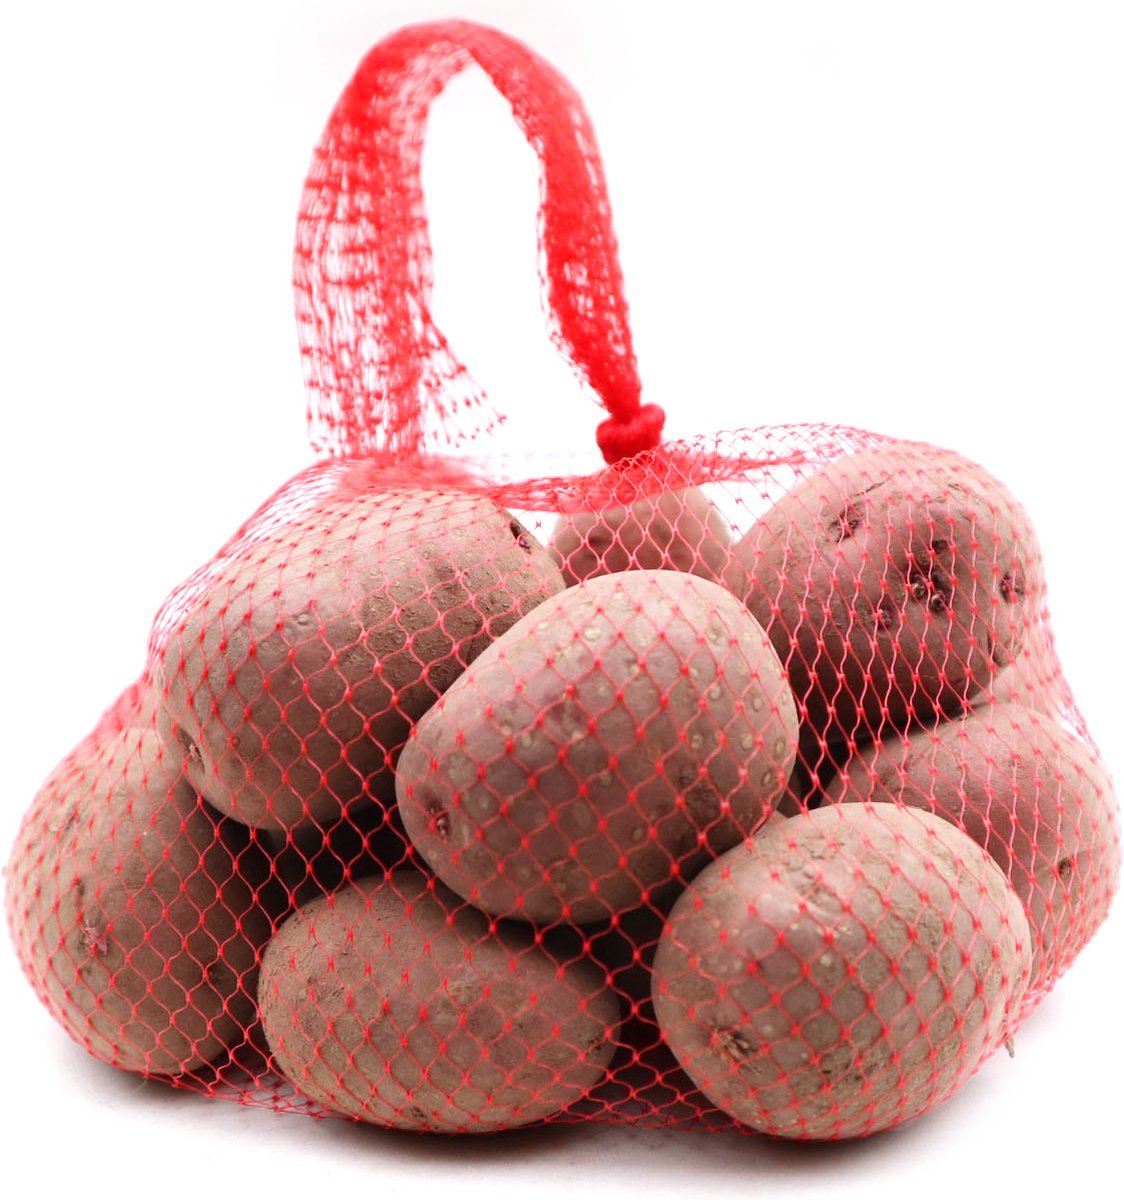 Pootaardappel 'Texla' - Hoge Phyt resistentie - maat 28/40 - laat ras - 1kg (25-28 stuks)